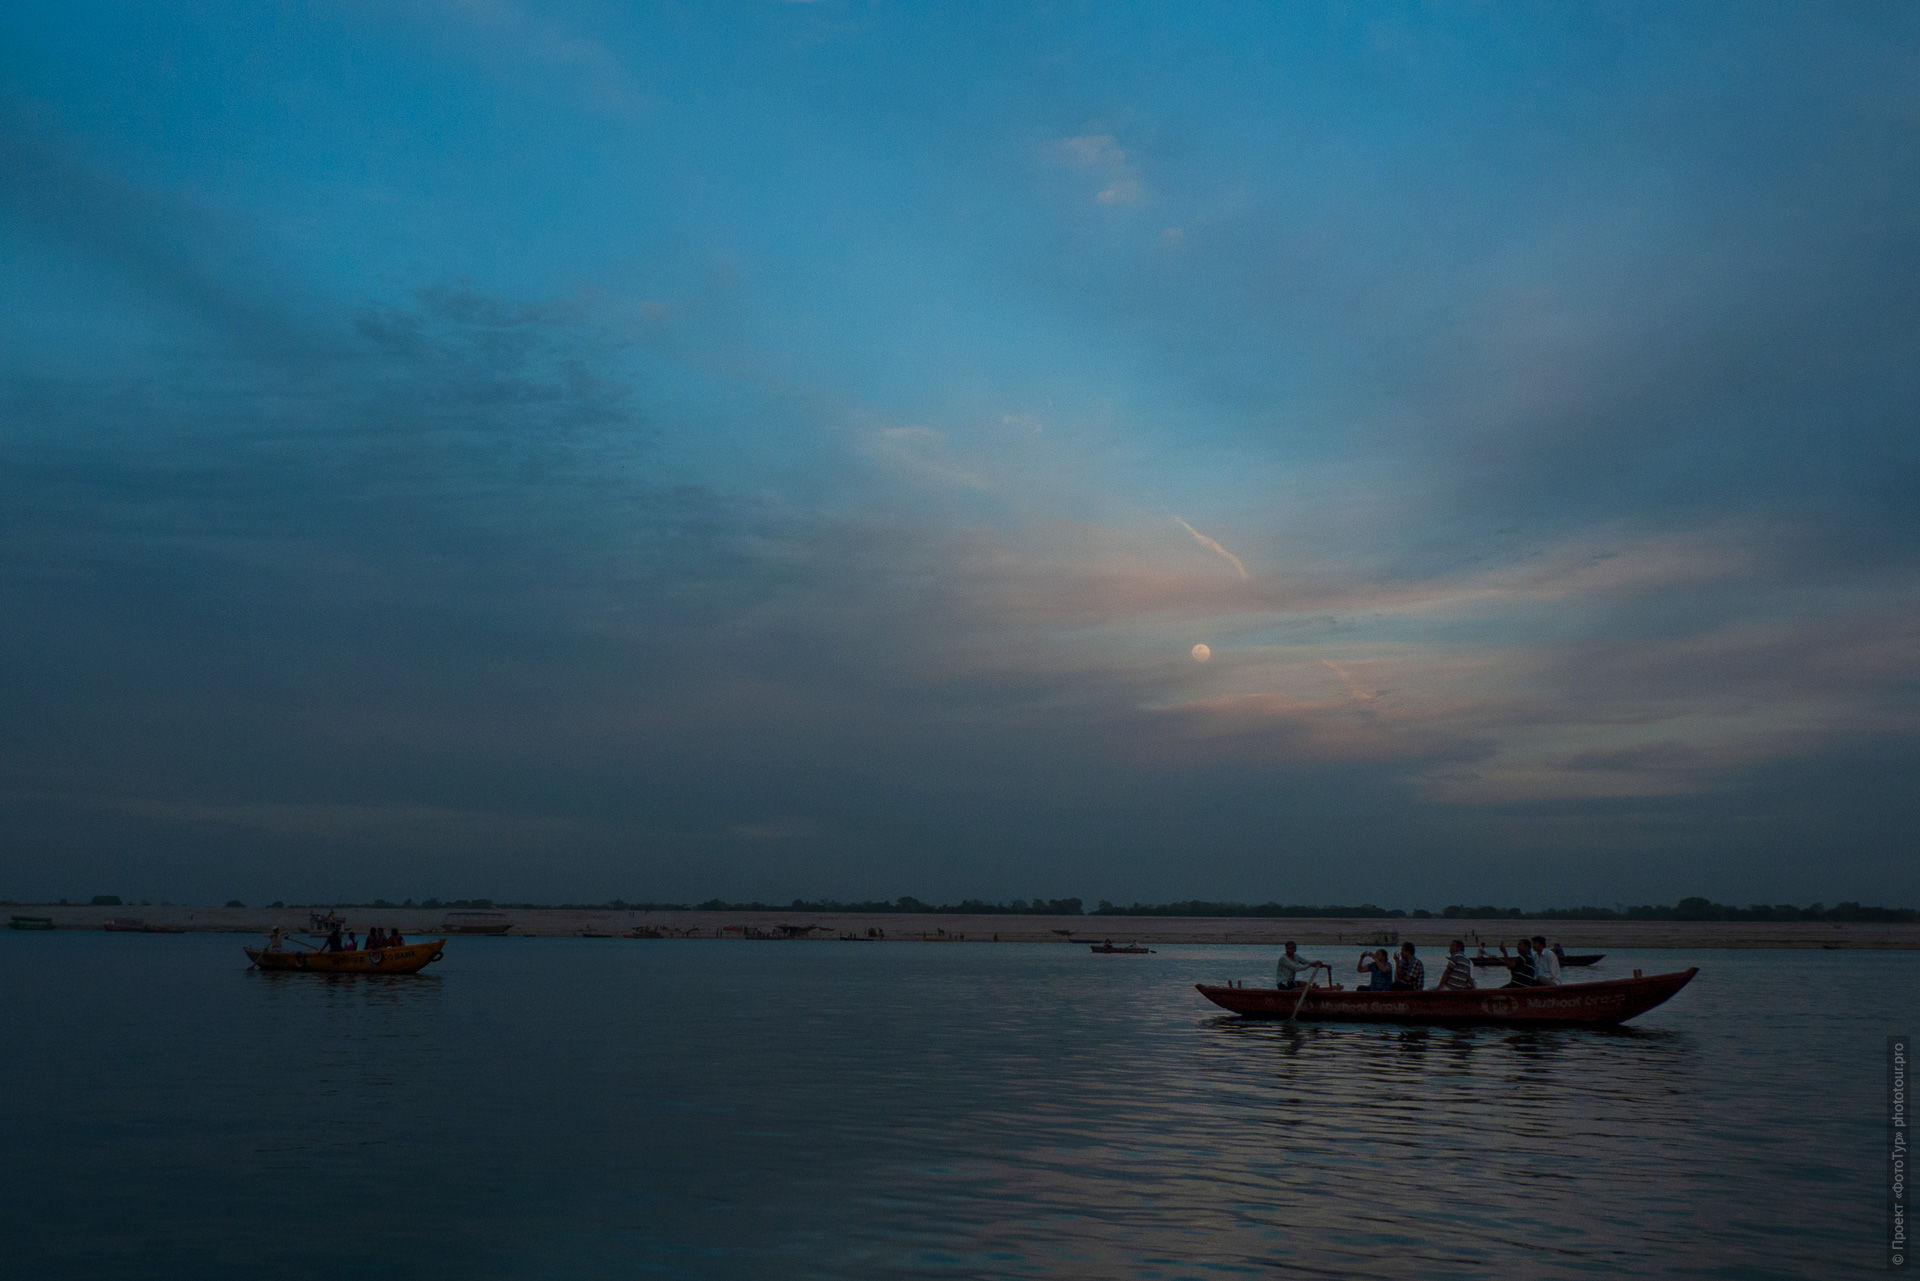 Рассвет в Варанаси, лодочный круиз по Ганге. Фототур Невероятная Индия: Холи+ Агра+Орчха+Кхаджурахо+Варанаси, 20.03. 2021 - 01.04.2021г.